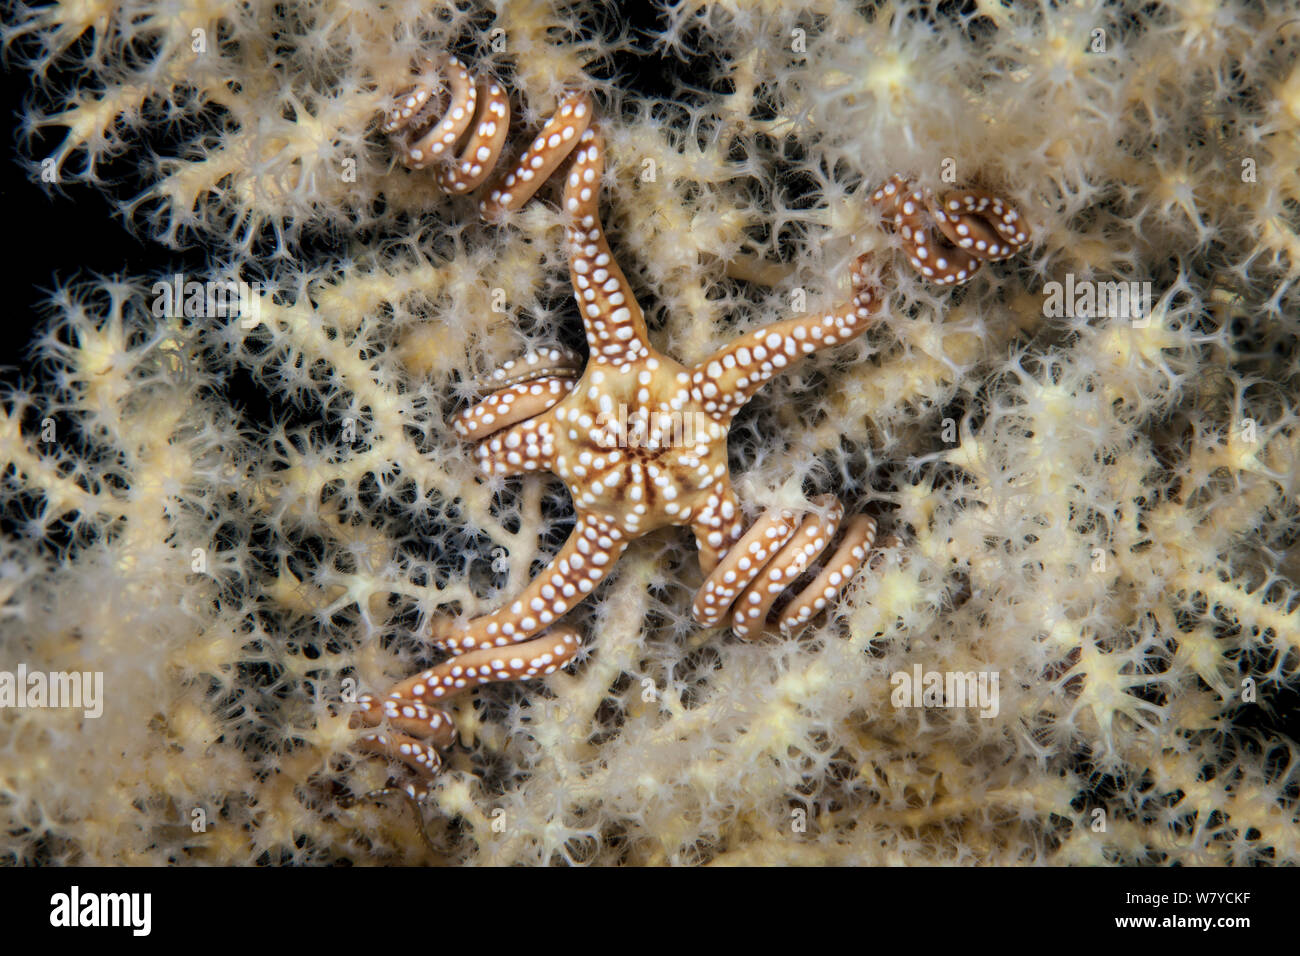 Spröde Stern (Astroceras elegans) leben in einer symbiotischen Beziehung auf einem Fjord Fan Coral (Acanthogorgia breviflora) in den Dusky Sound, Fiordland National Park, Neuseeland. April 2014. Stockfoto